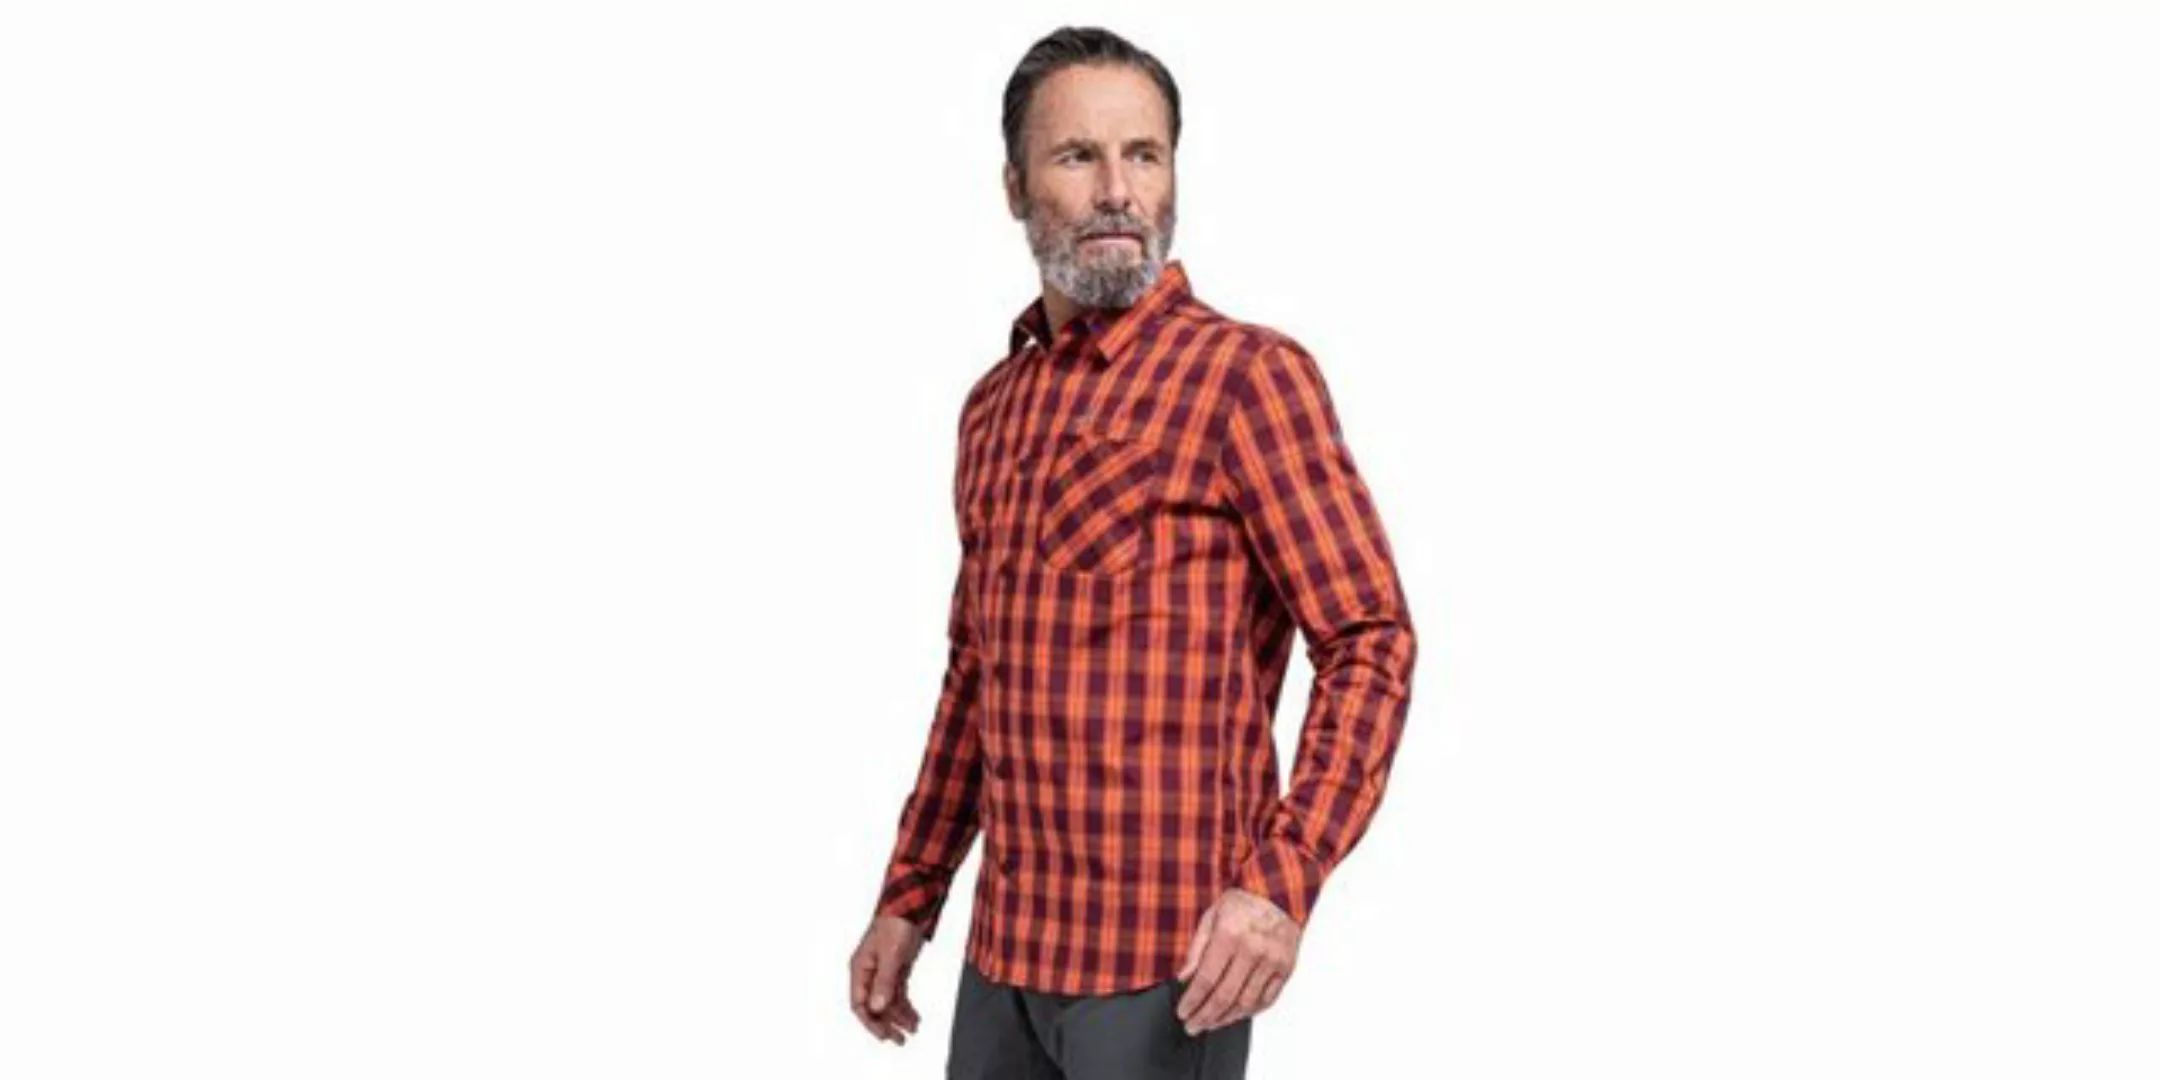 Schöffel Funktionshemd Shirt Sobra M günstig online kaufen